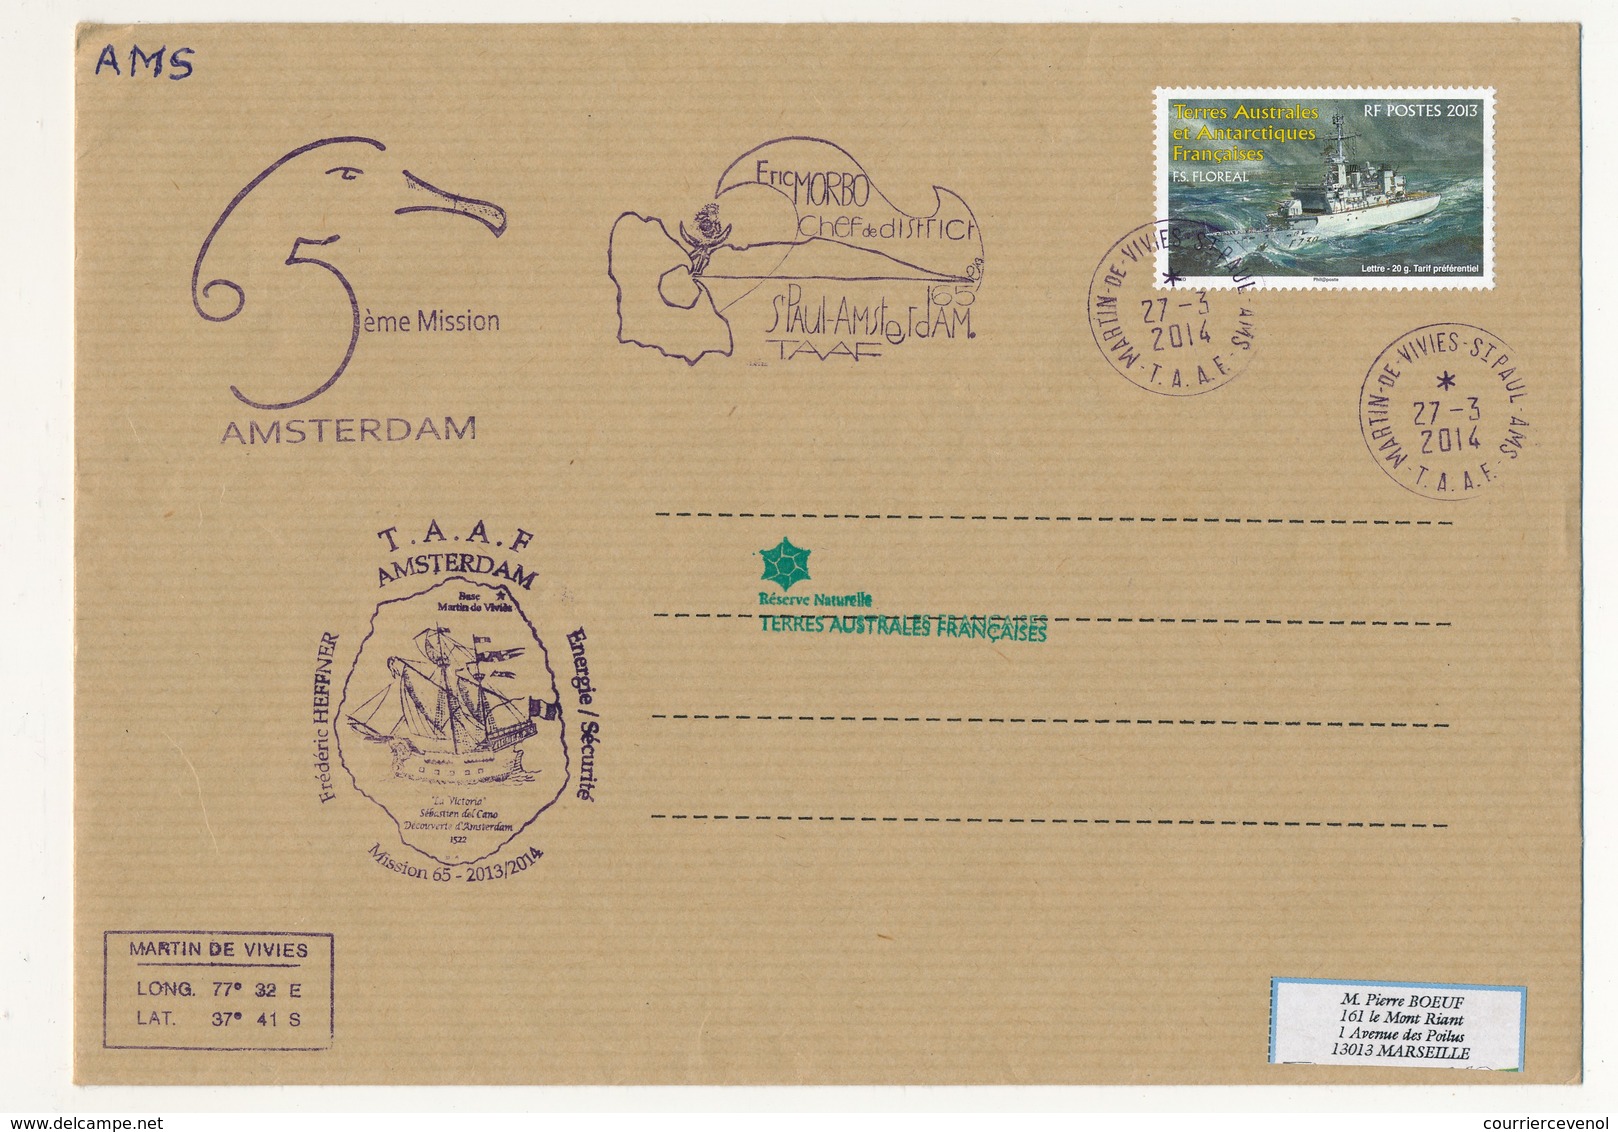 T.A.A.F - Enveloppe Martin De Vivies - St Paul Ams - 27/3/2014 - FS Floreal / 5eme Mission Amsterdam - Lettres & Documents